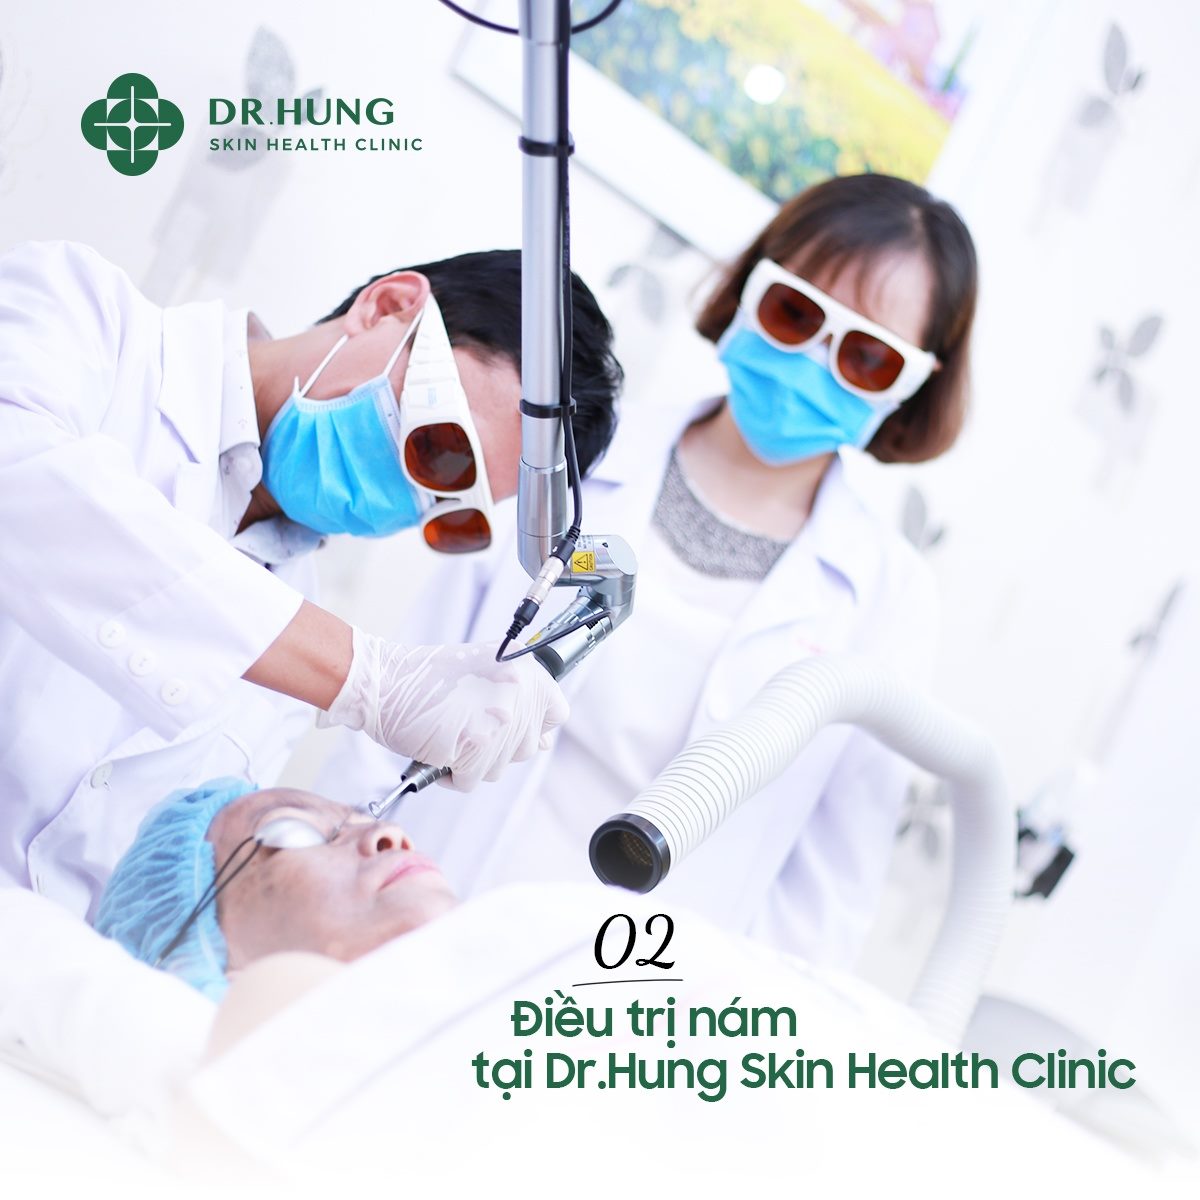 Điều trị nám tại Dr.Hung Skin Health Clinic